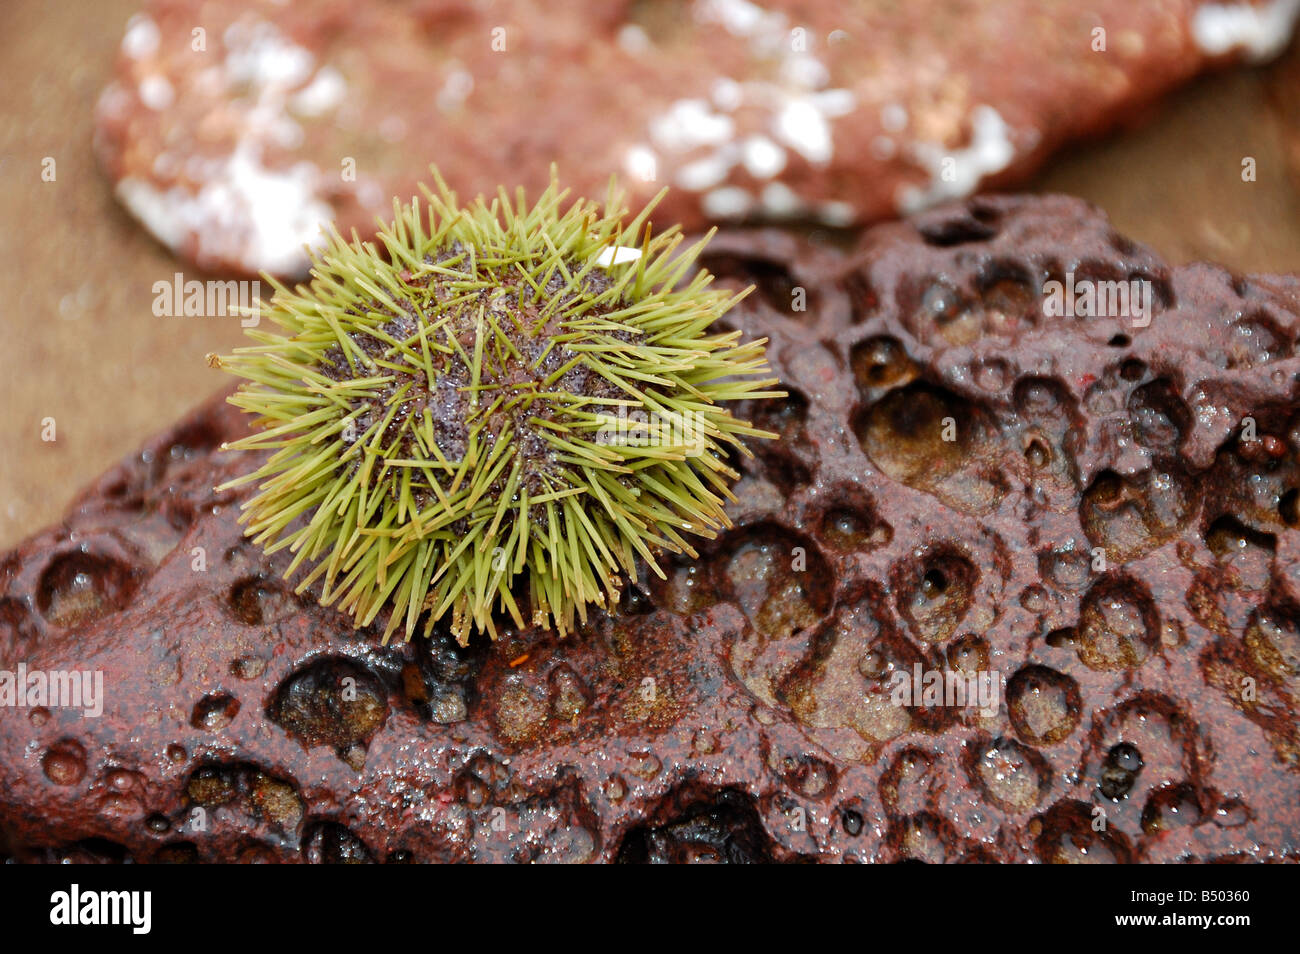 Green sea urchin Lytechinus semituberculatus Galapagos Islands Ecuador South America Stock Photo